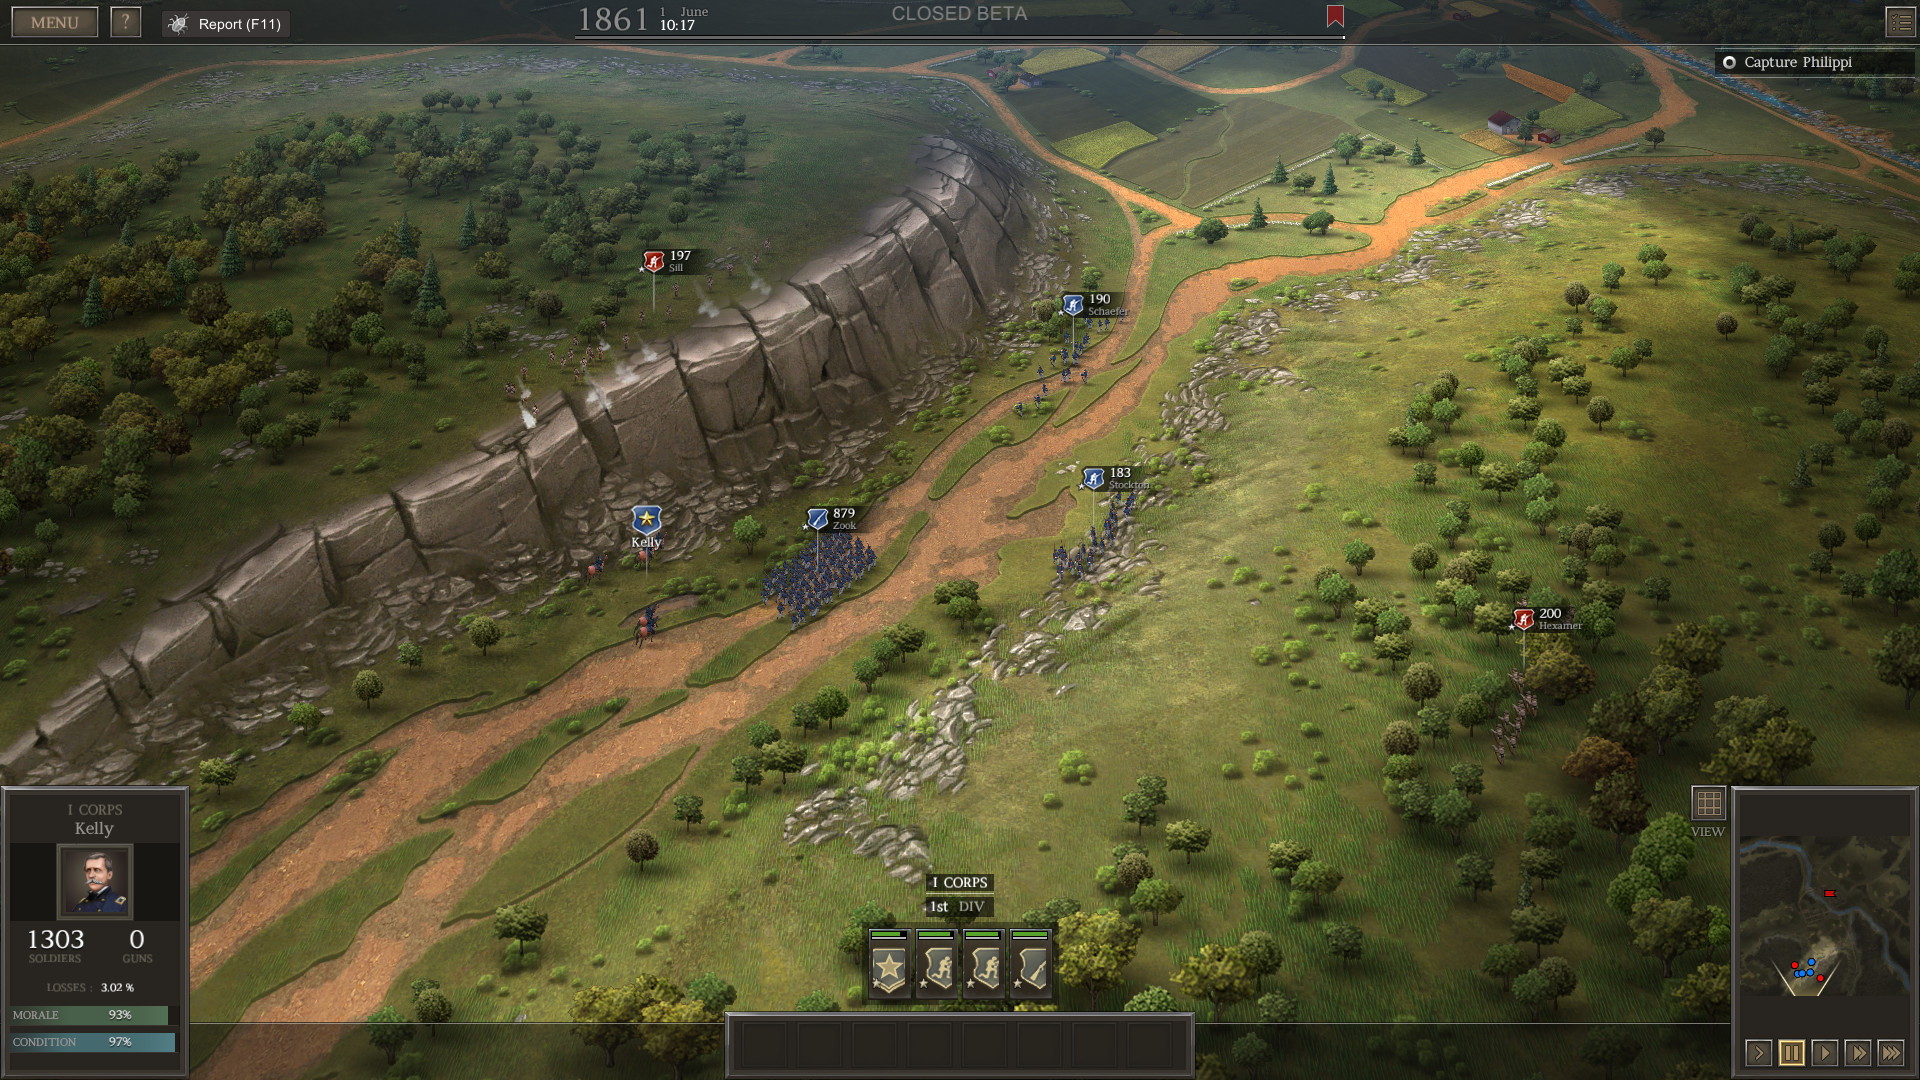 Ultimate General: Civil War - screenshot 3